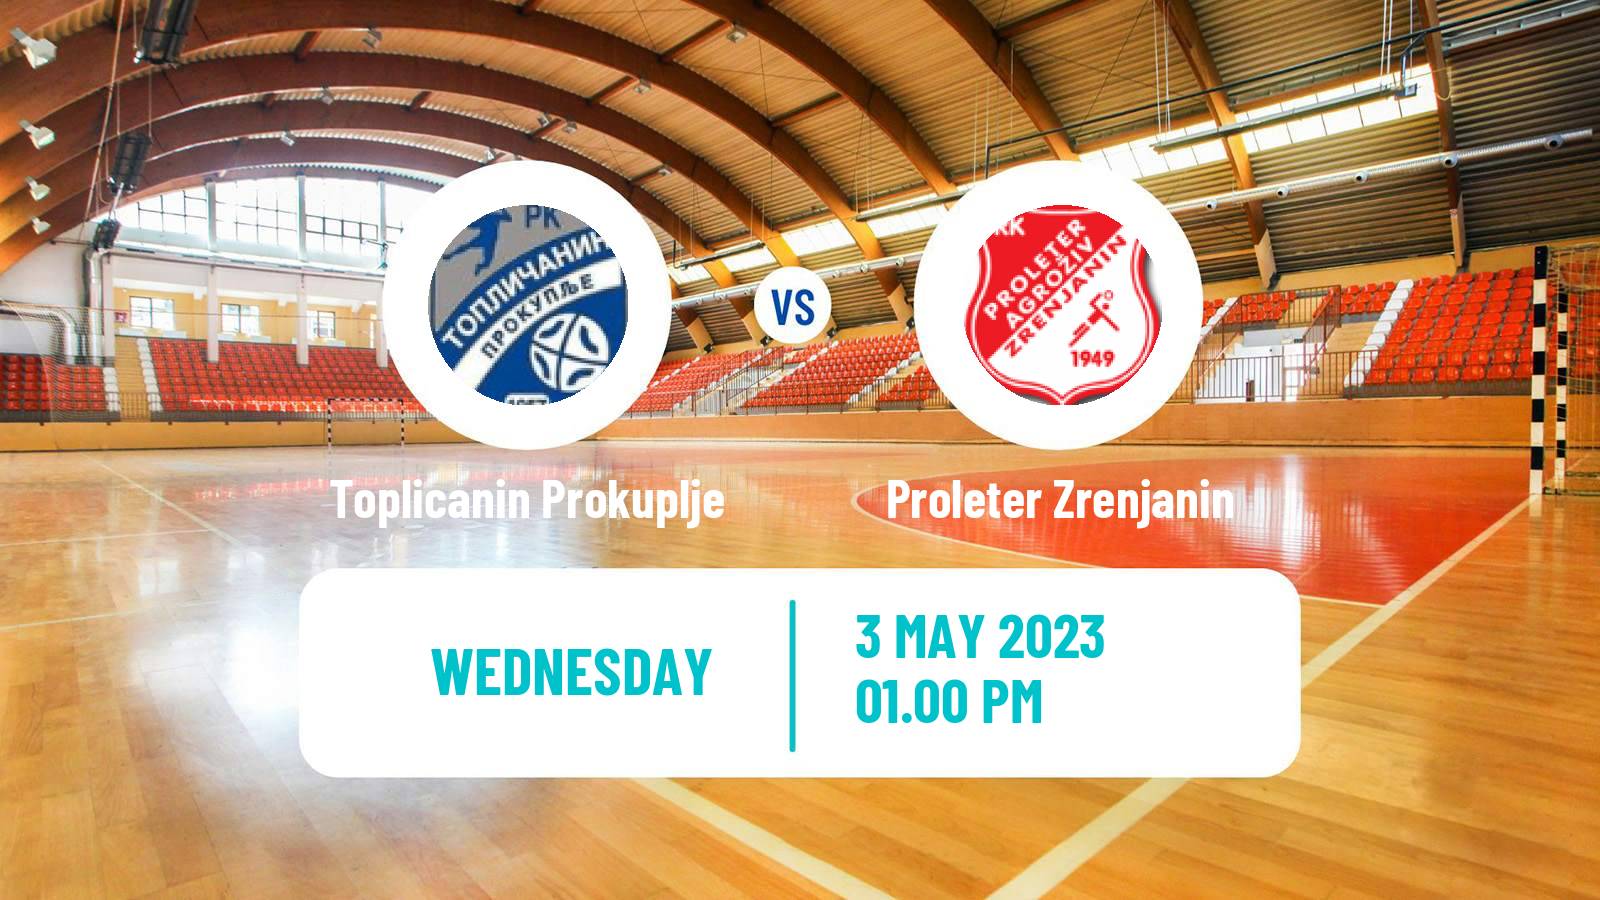 Handball Serbian Superliga Handball Toplicanin Prokuplje - Proleter Zrenjanin